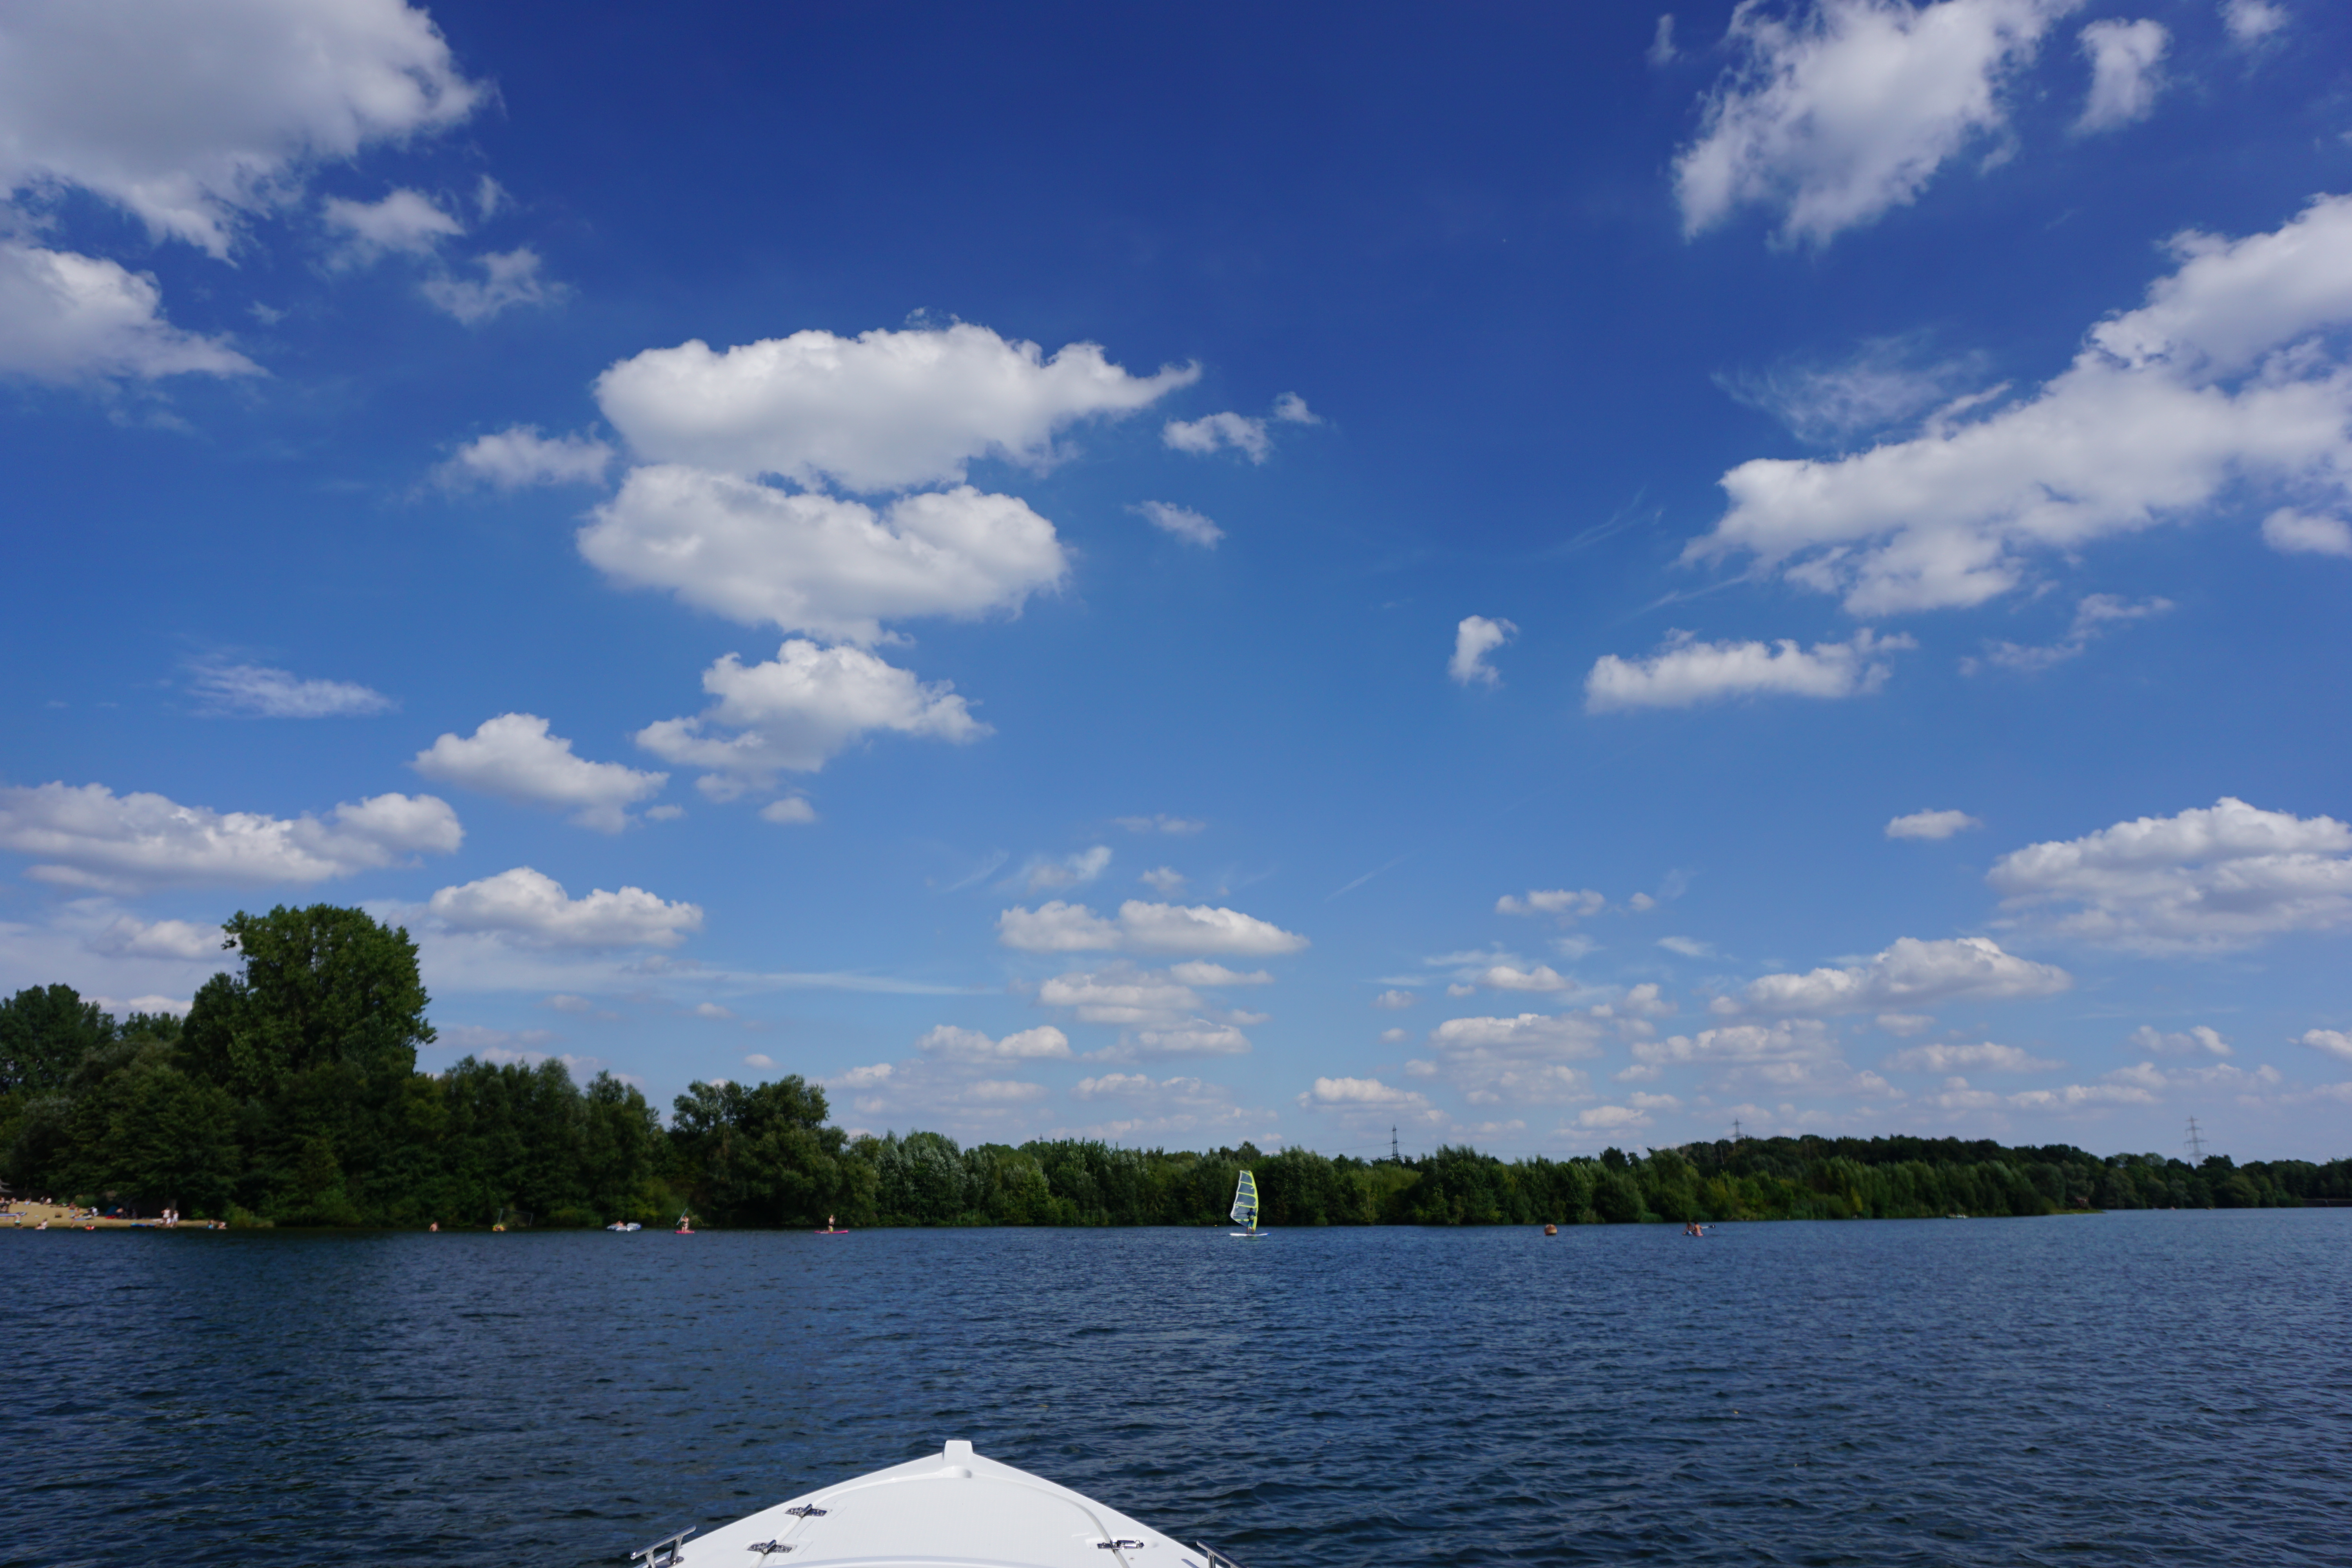 Bootsfahrt auf dem Lippesee.
